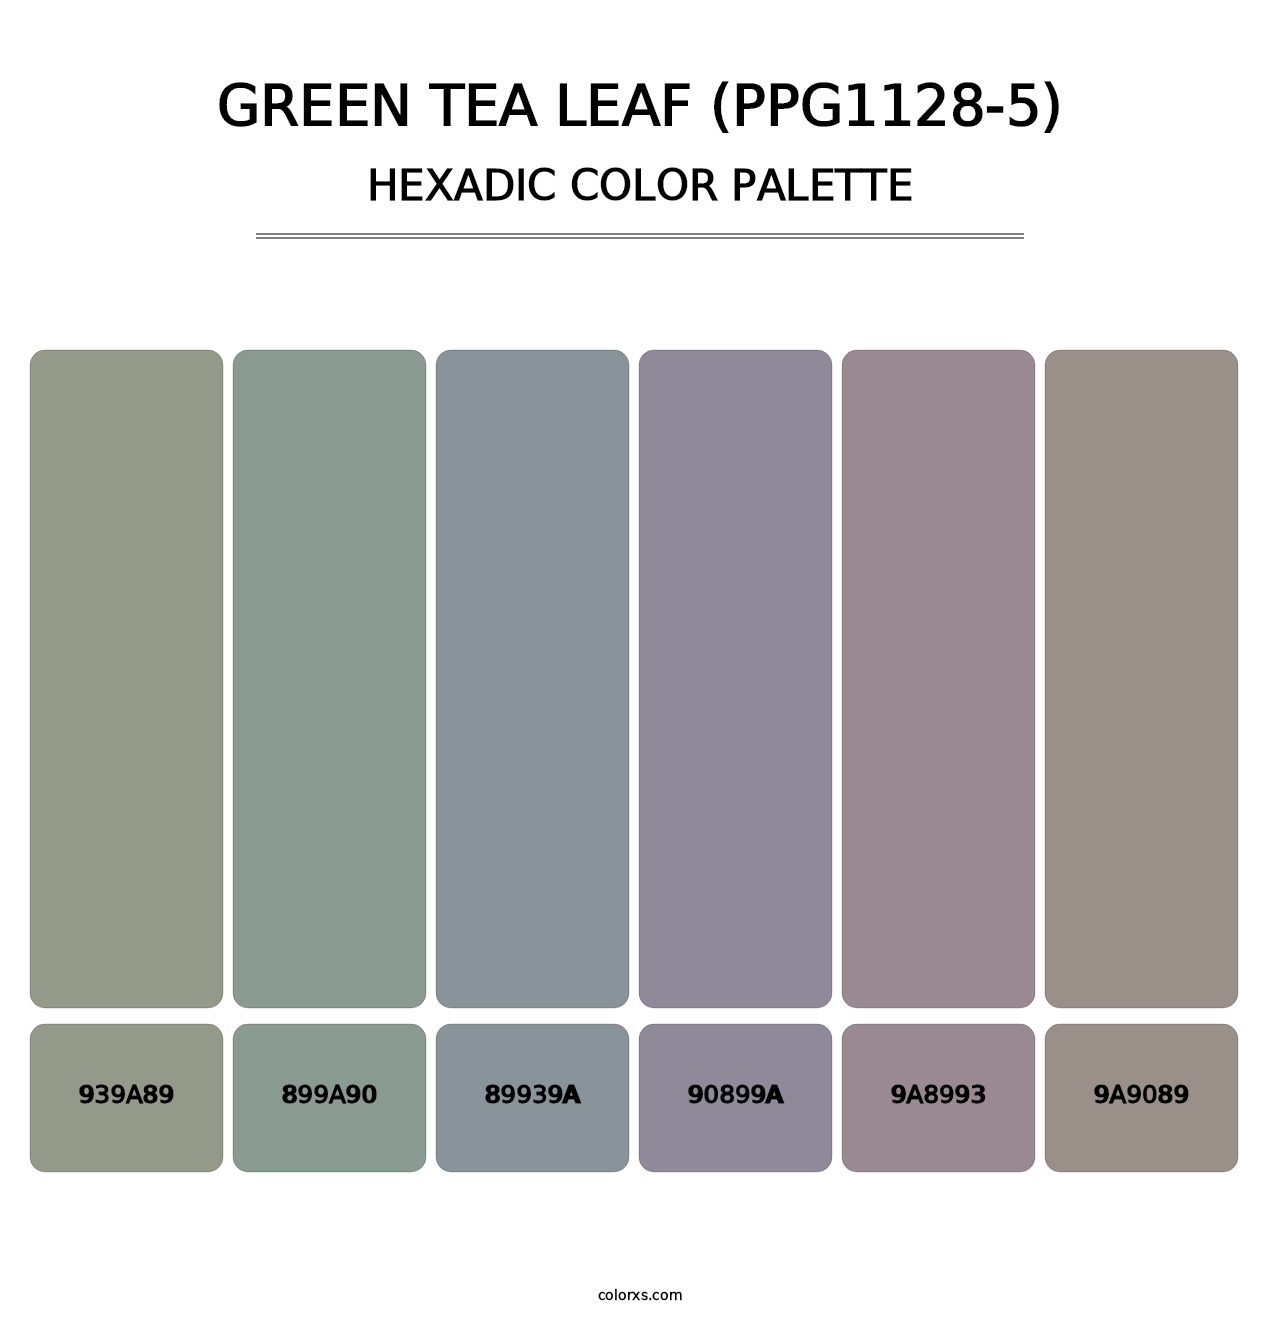 Green Tea Leaf (PPG1128-5) - Hexadic Color Palette